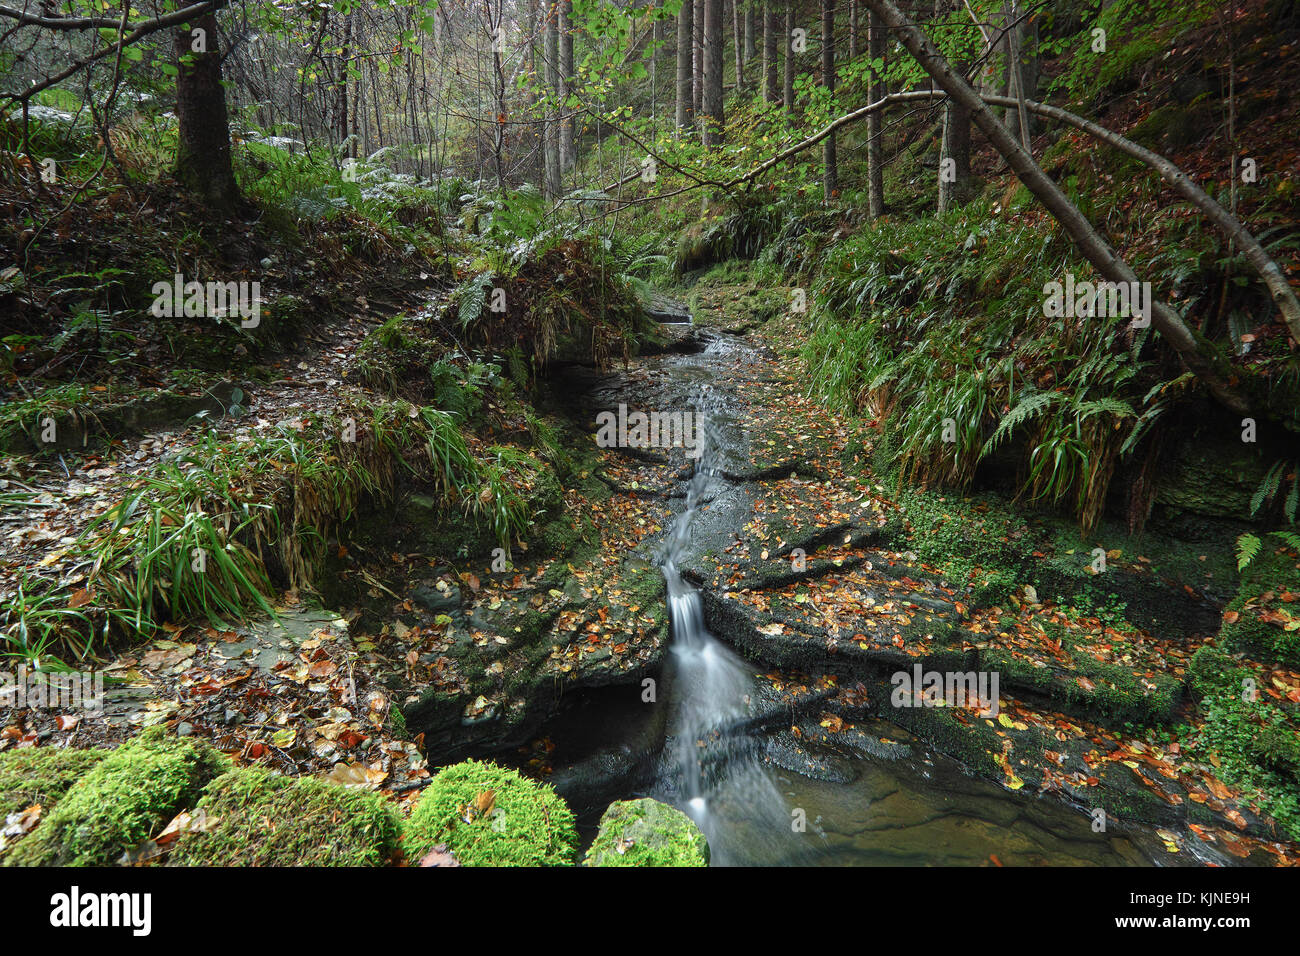 Un piccolo affluente che fluisce verso il basso attraverso la foresta di hamsterley, County Durham North East England culminate in una piccola cascata durante l'autunno. Foto Stock